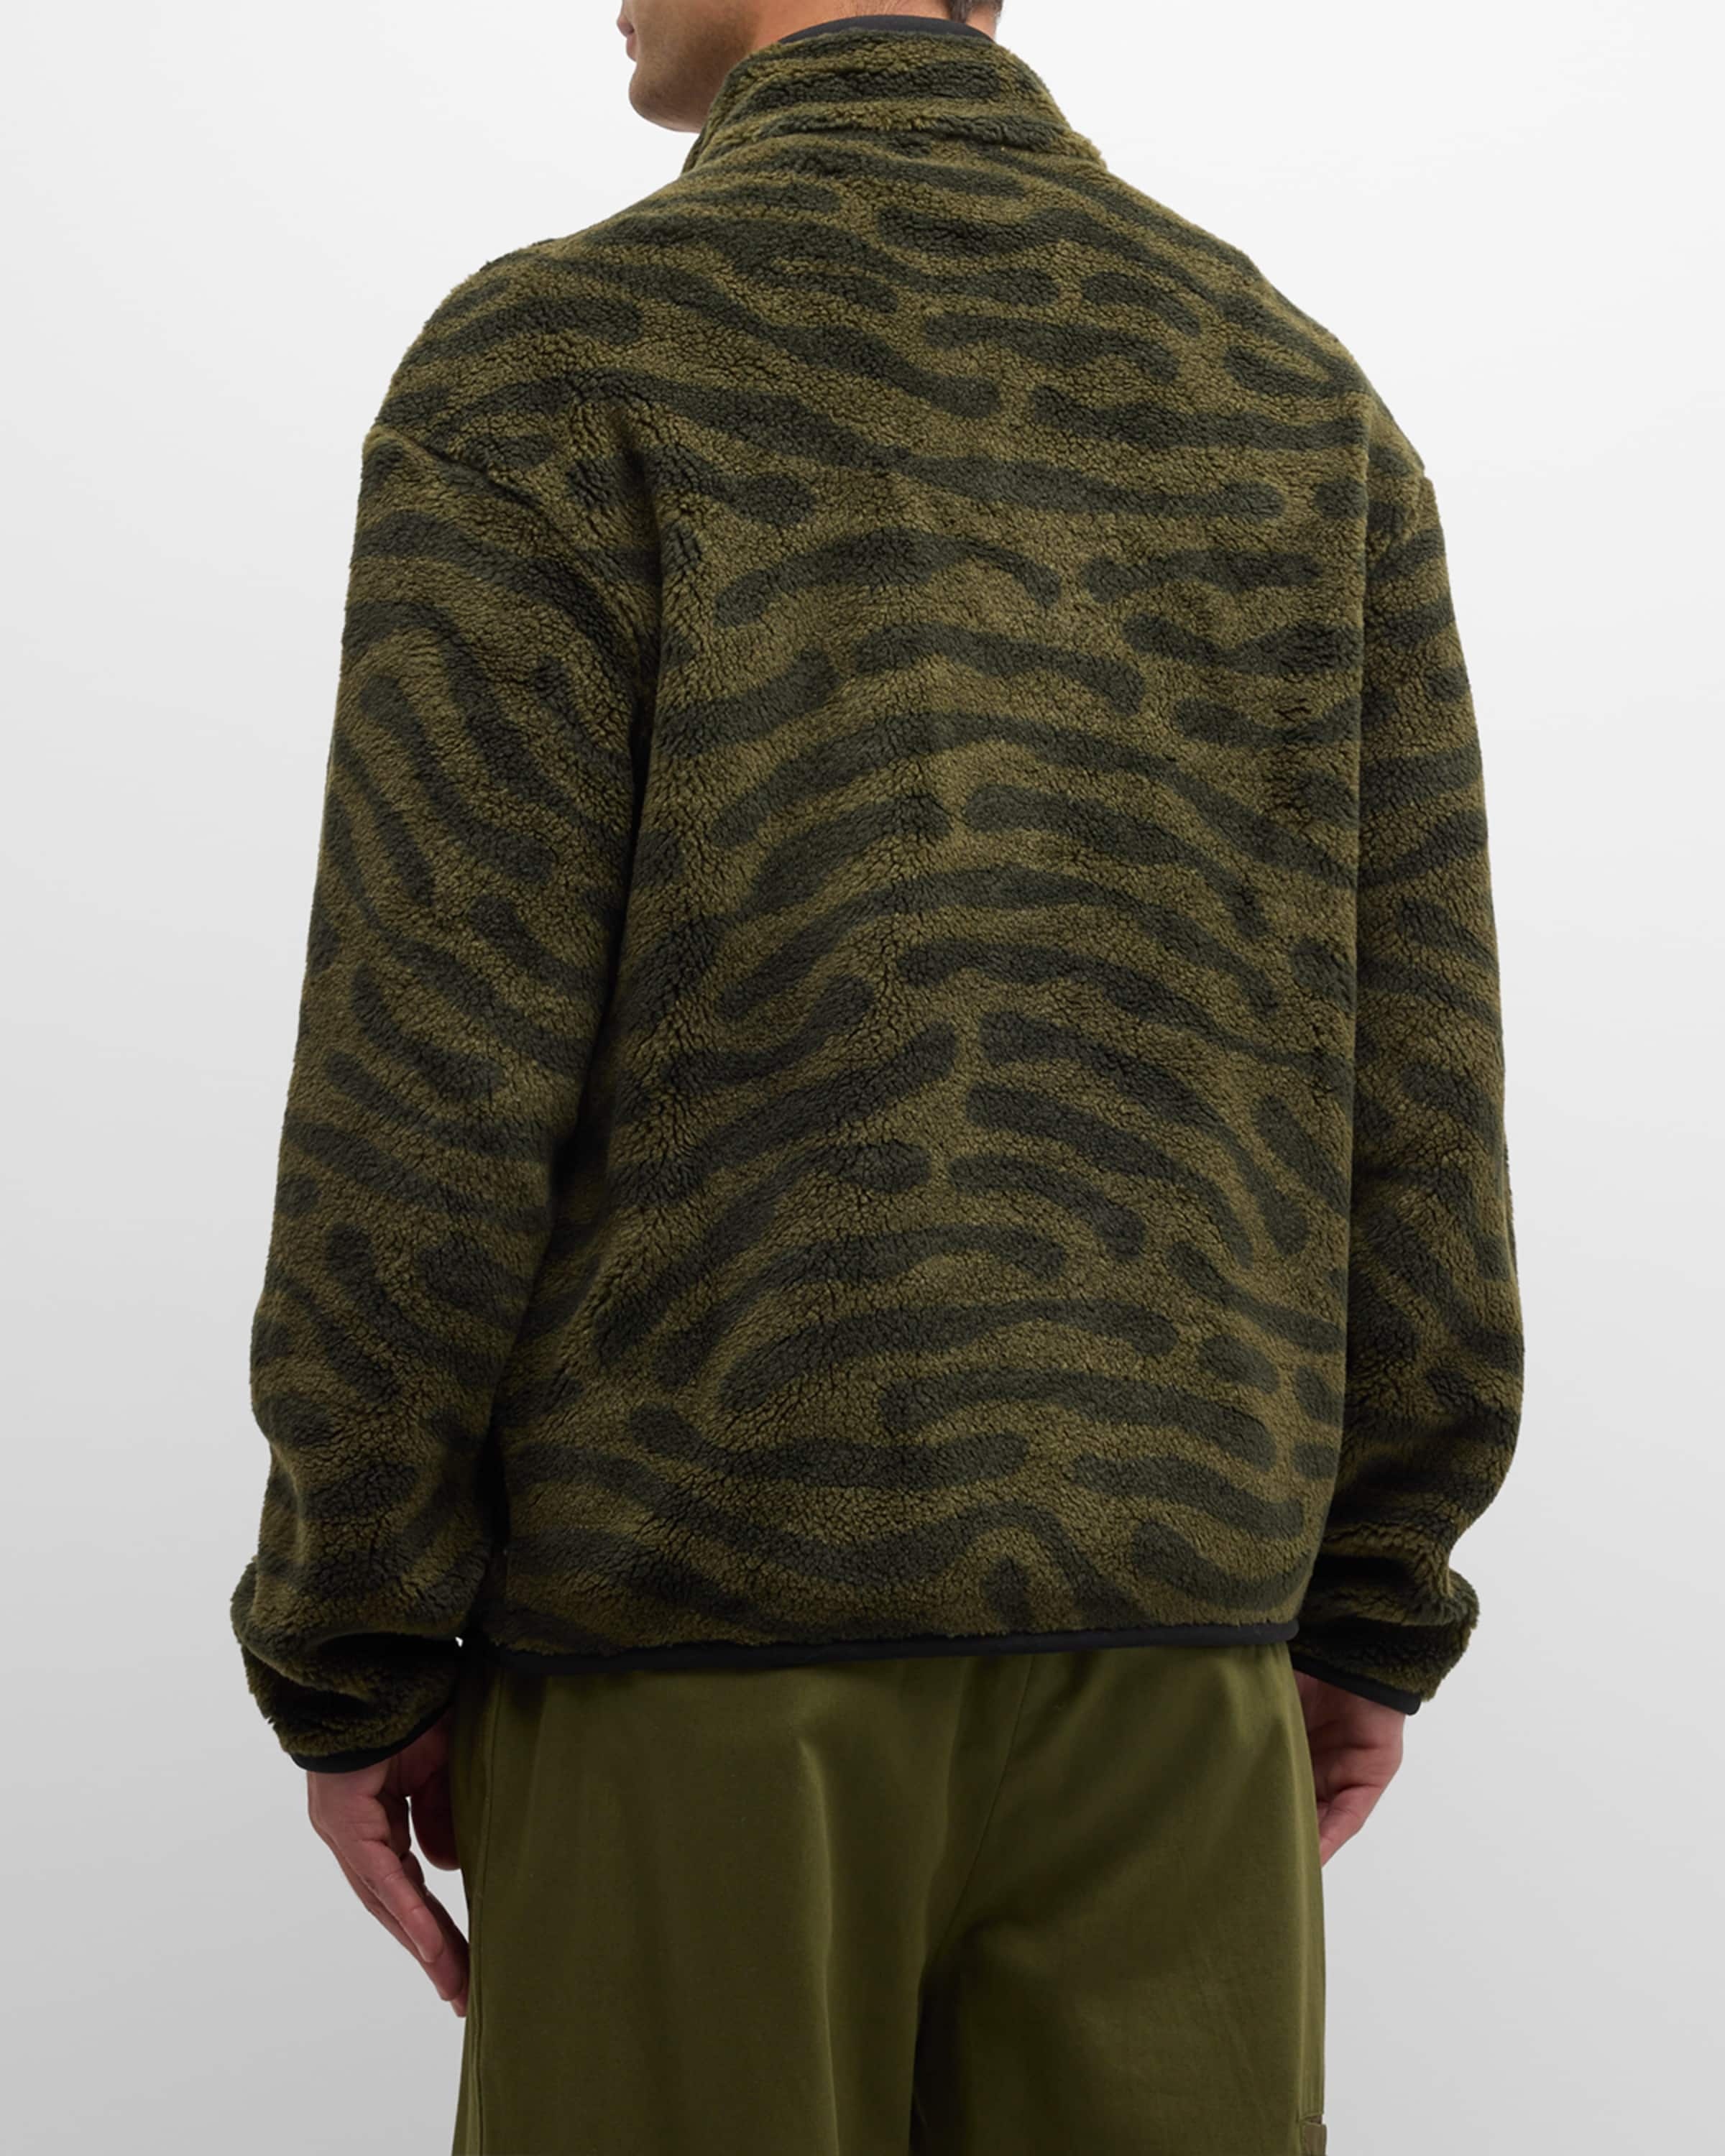 x Salehe Bembury Men's Abstract Fleece Zip Sweatshirt - 4